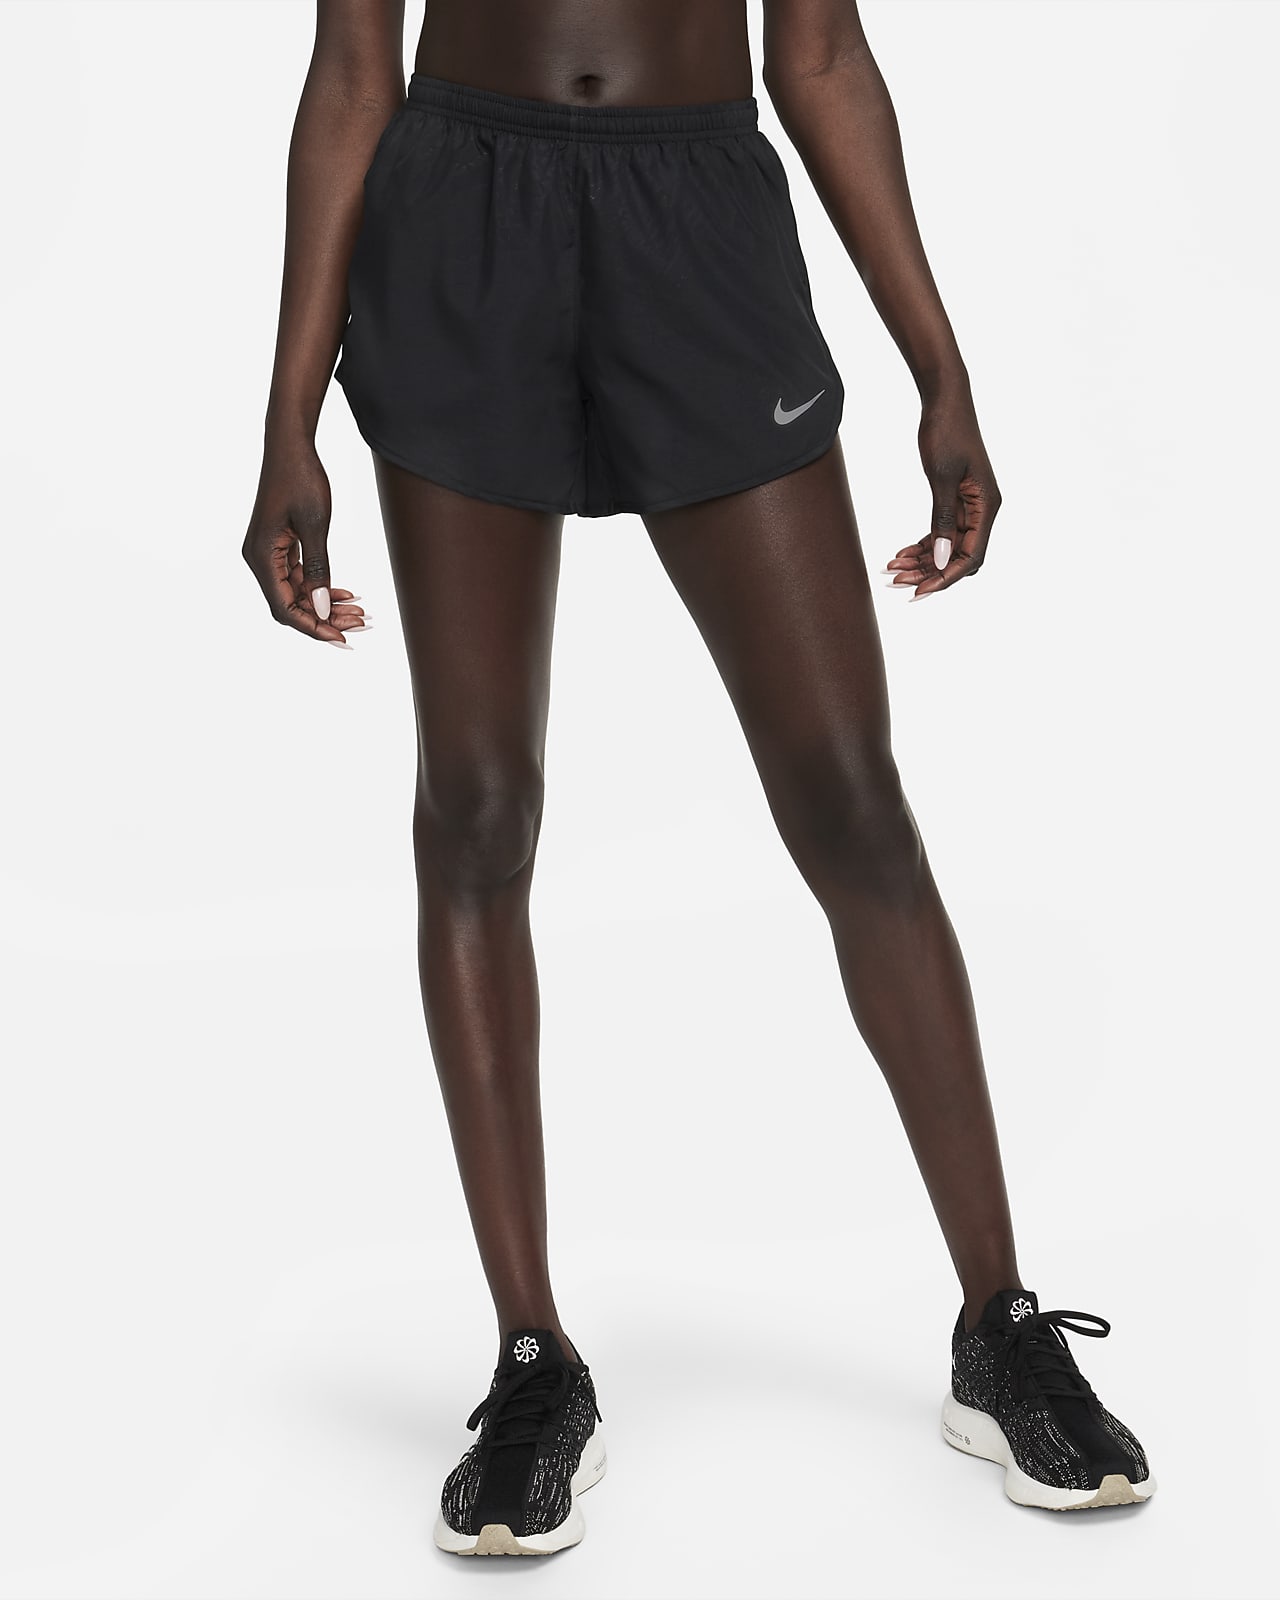 Kids Nike Tempo Short - 'Black/Black' – Kicks Lounge